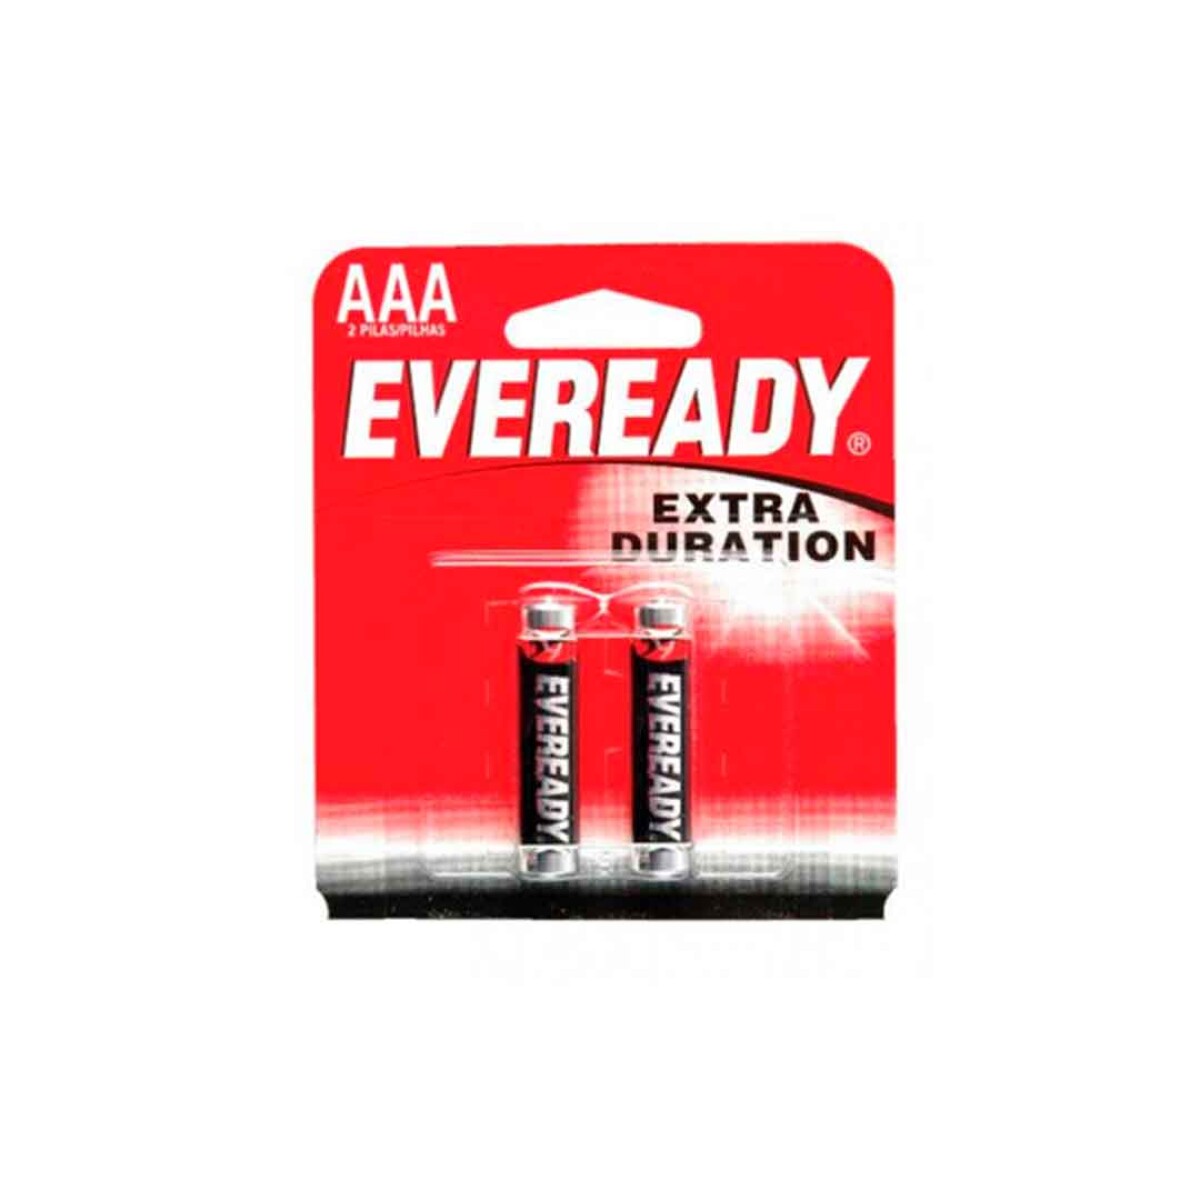 Pilas Eveready AAA pack x2 extra duración - 001 